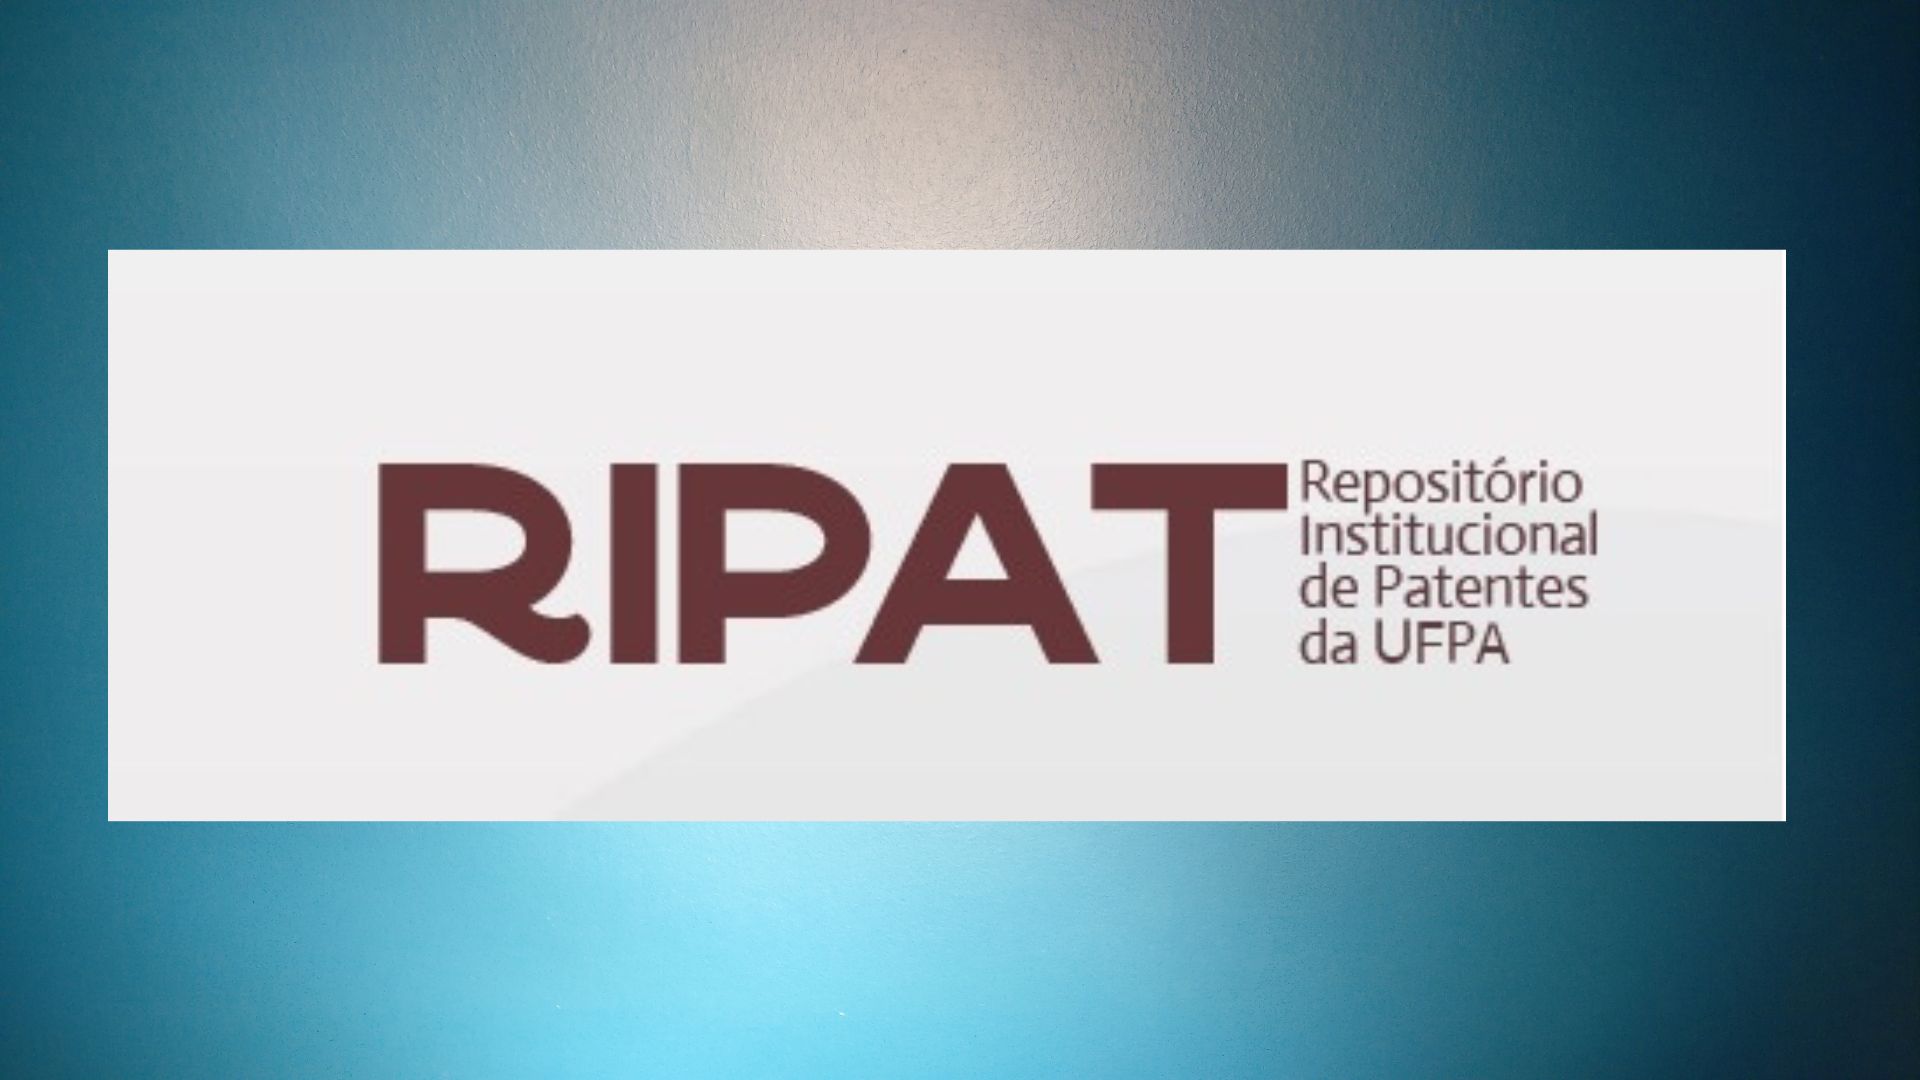 Comunidades e Coleções - Repositório Institucional de Patentes - UFPA